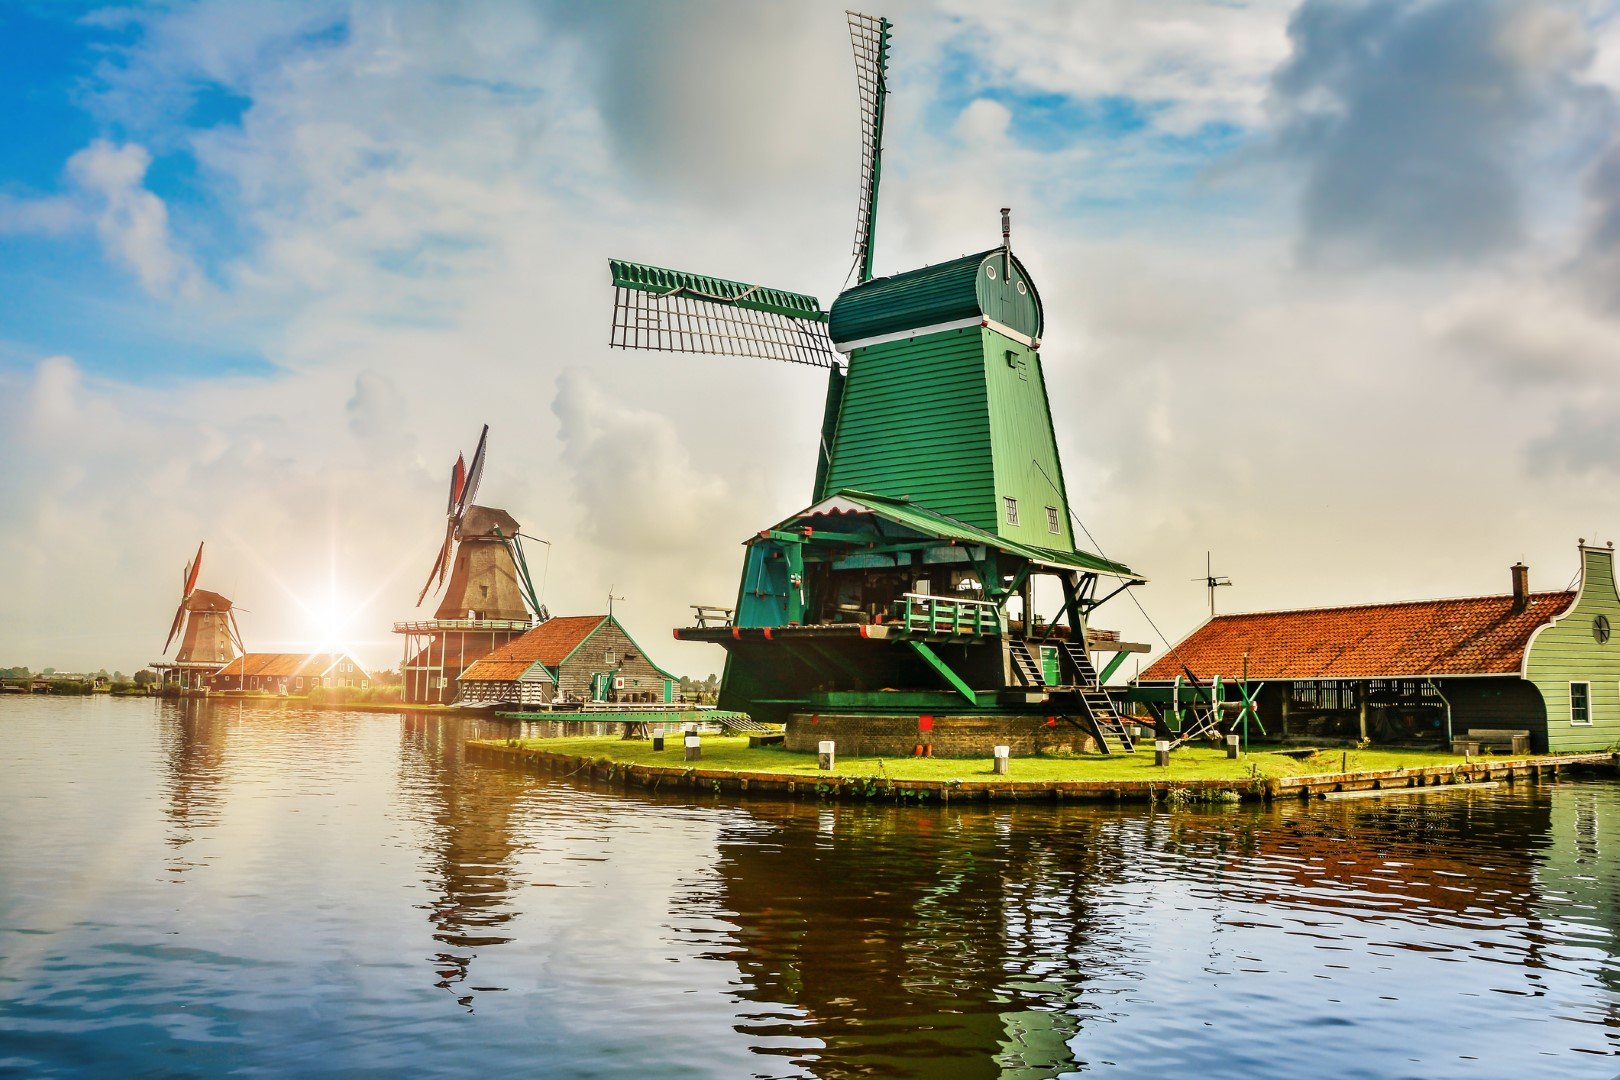 В Заансе Сханс е имало 600 мелници, образуващи първата индустриална зона в Нидерландия